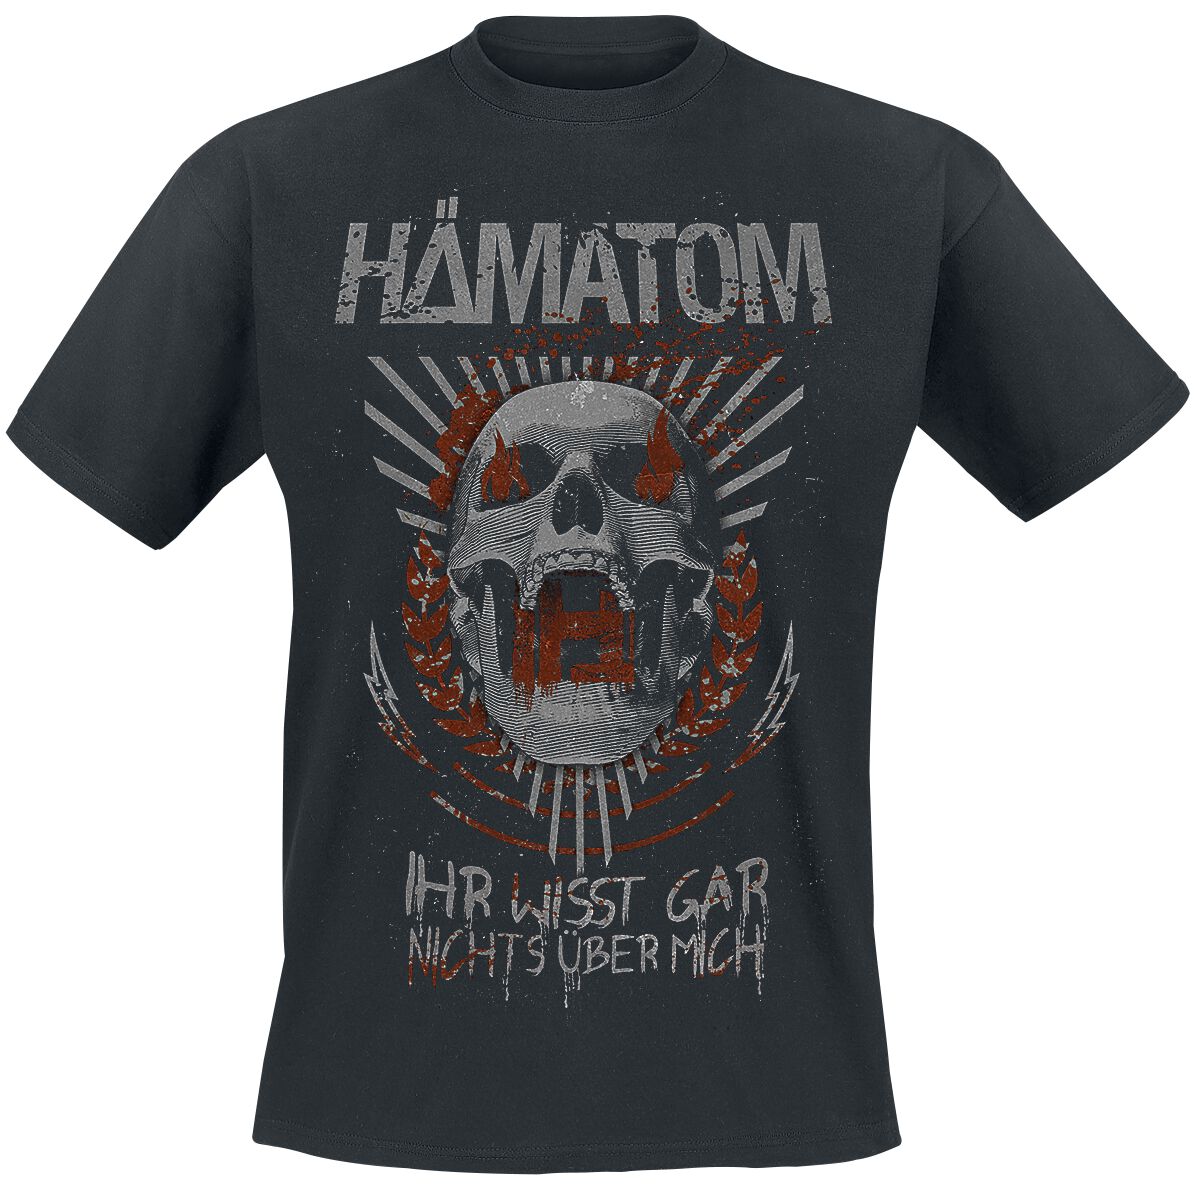 Hämatom T-Shirt - Ihr wisst gar nichts über mich - S bis 5XL - für Männer - Größe S - schwarz  - Lizenziertes Merchandise!